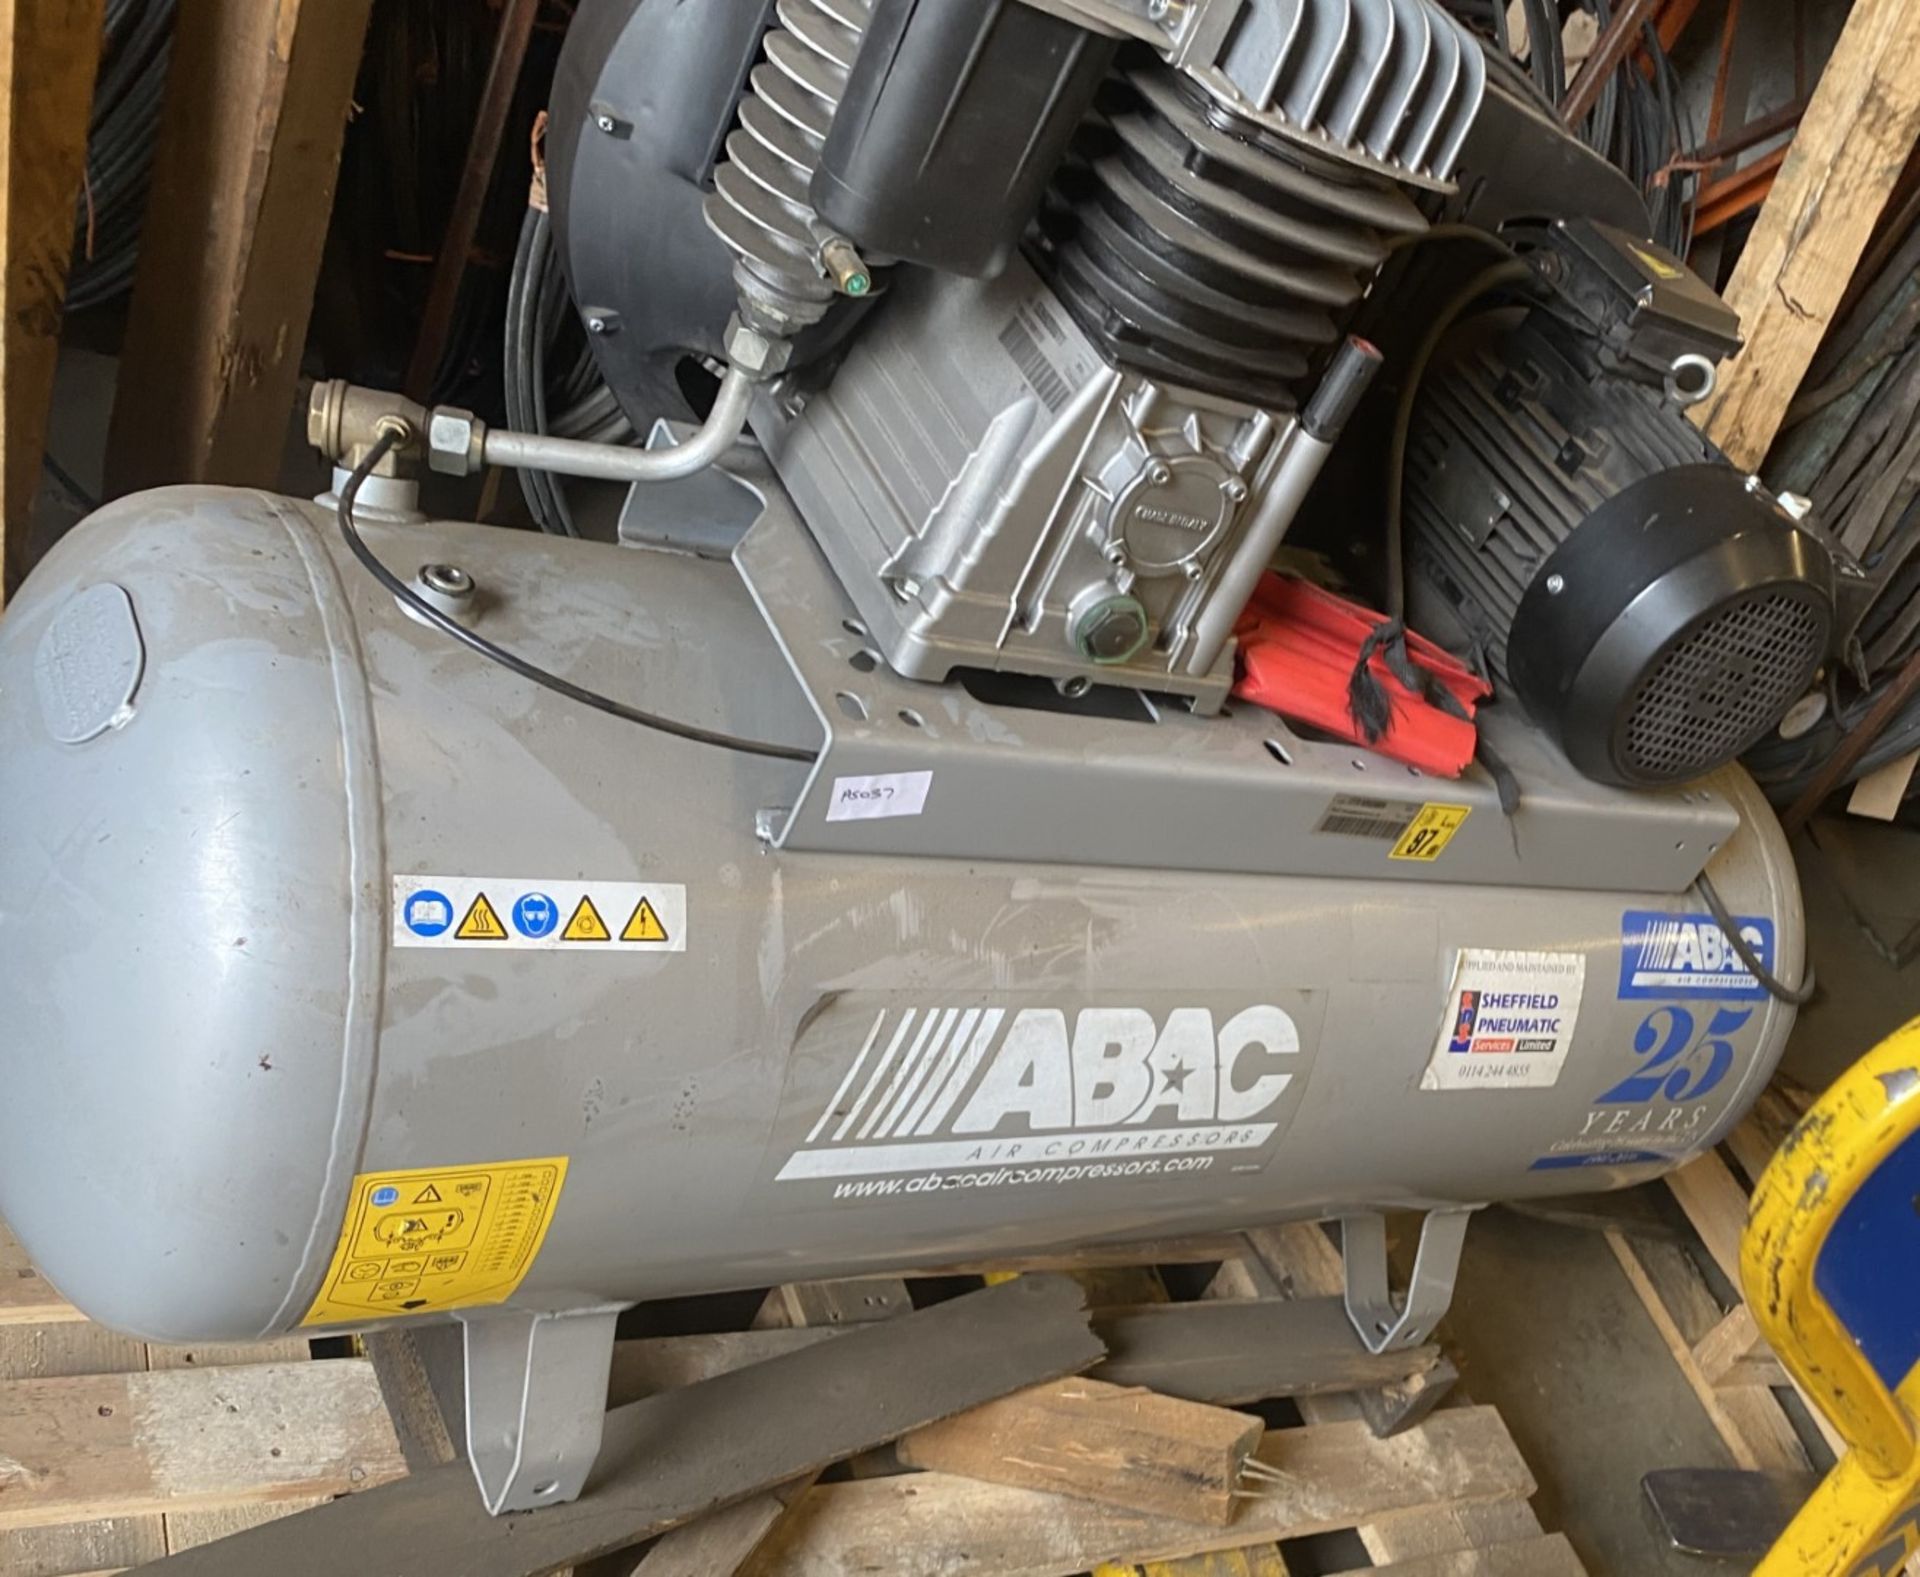 1 x ABAC Industrial Heavy Duty Air Compressor